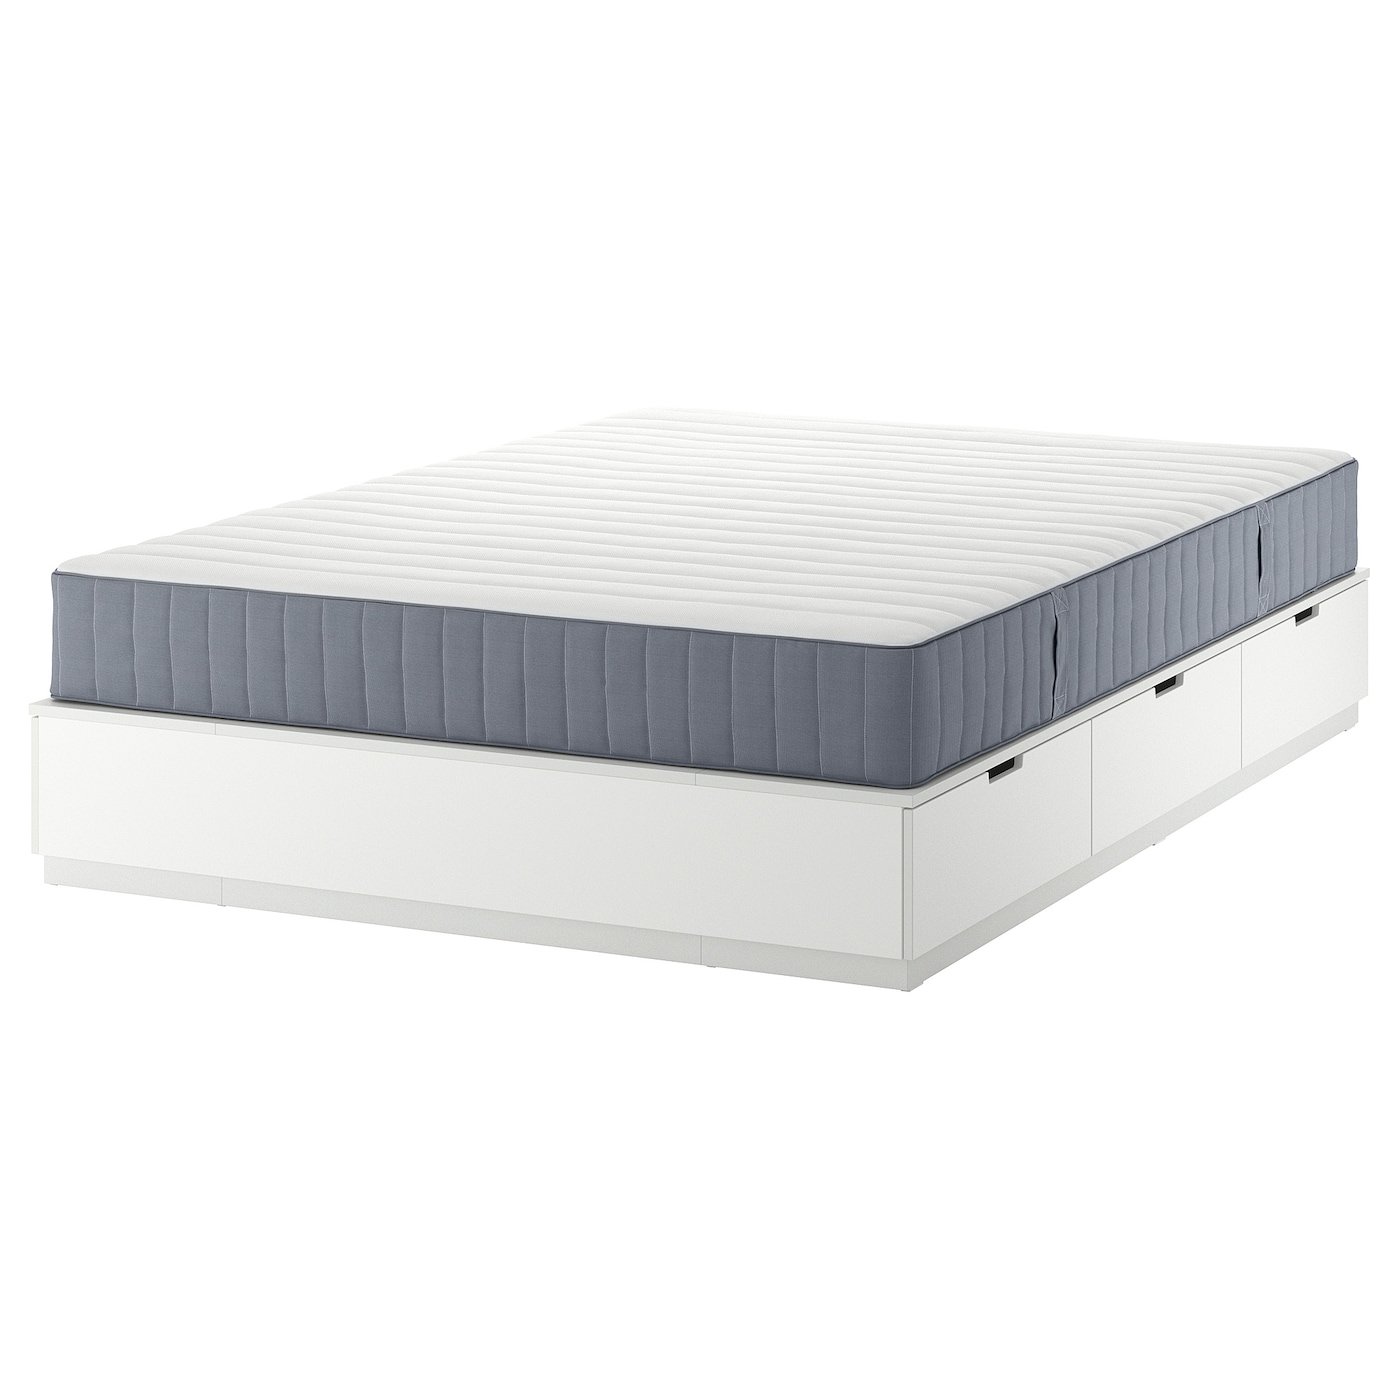 Каркас кровати с ящиком для хранения и матрасом - IKEA NORDLI, 200х160 см, матрас жесткий, белый, НОРДЛИ ИКЕА